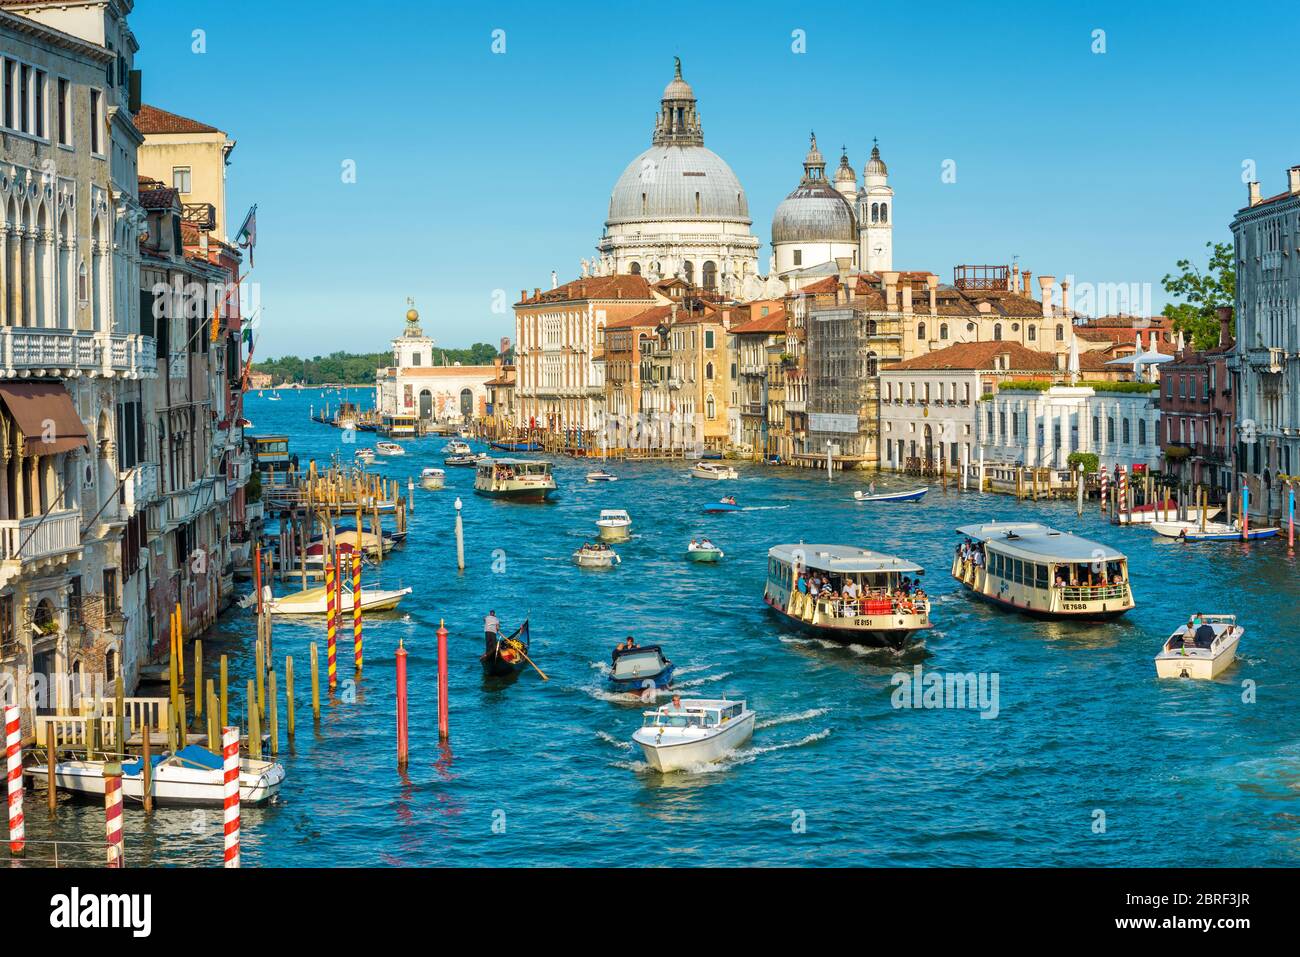 Venise, Italie - 18 mai 2017 : trafic de transport sur le Grand Canal à Venise, Italie. Santa Maria della Salute église au loin. Le Grand Canal est o Banque D'Images